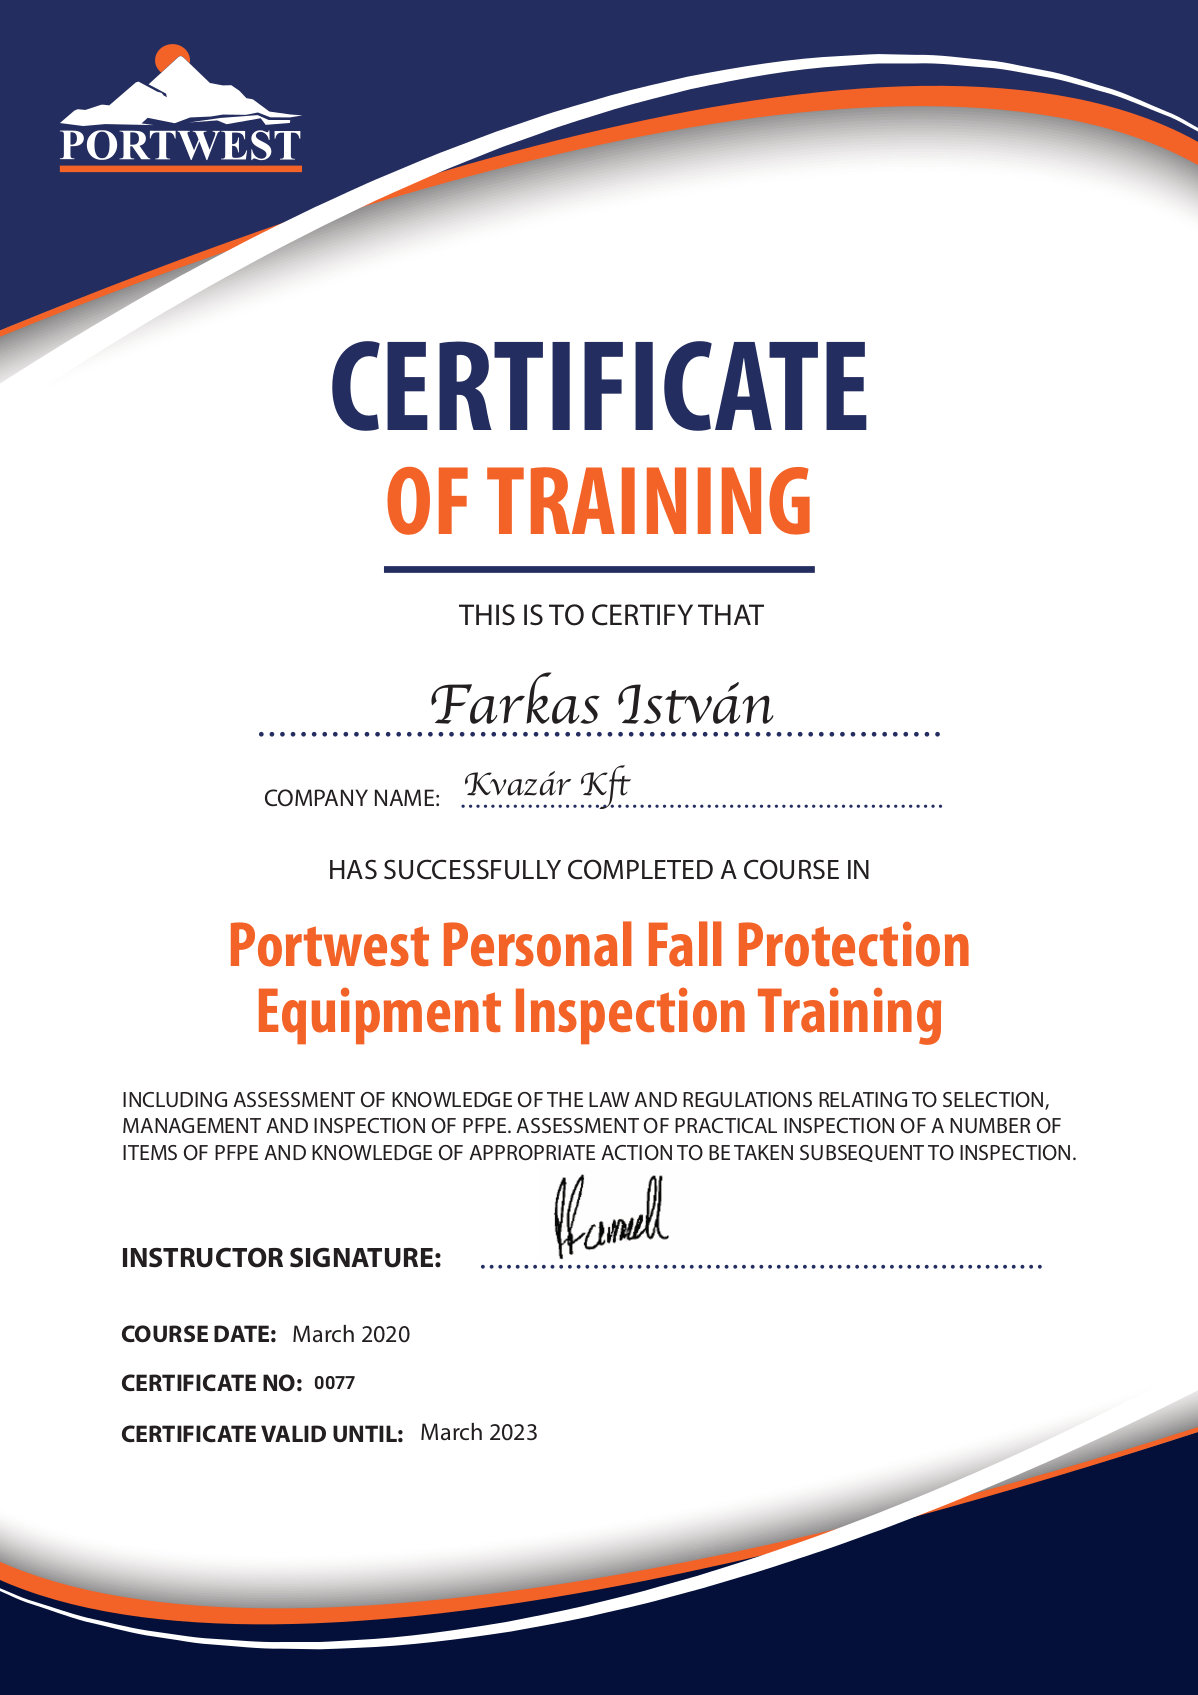 certifcate_of_training-farkas_istvan_1200x.jpg